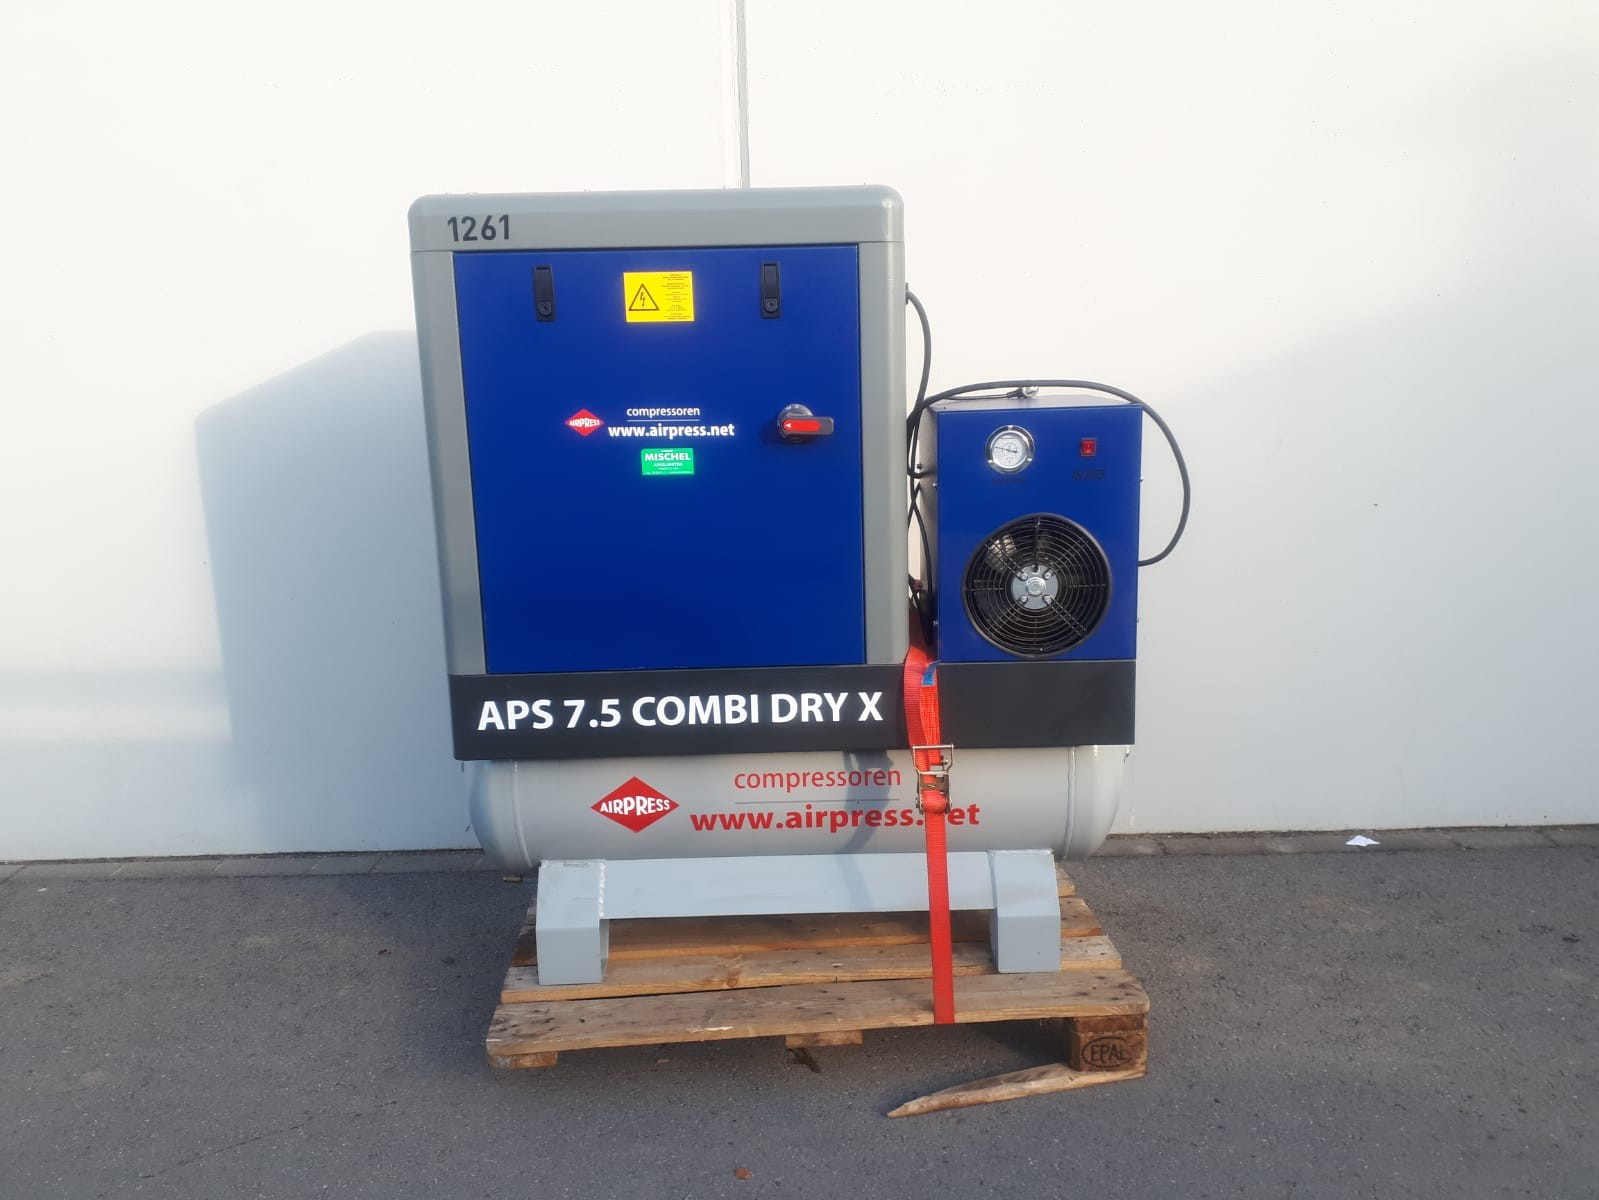 Compresseur à vis Airpress – APS 7.5 Combi Dry